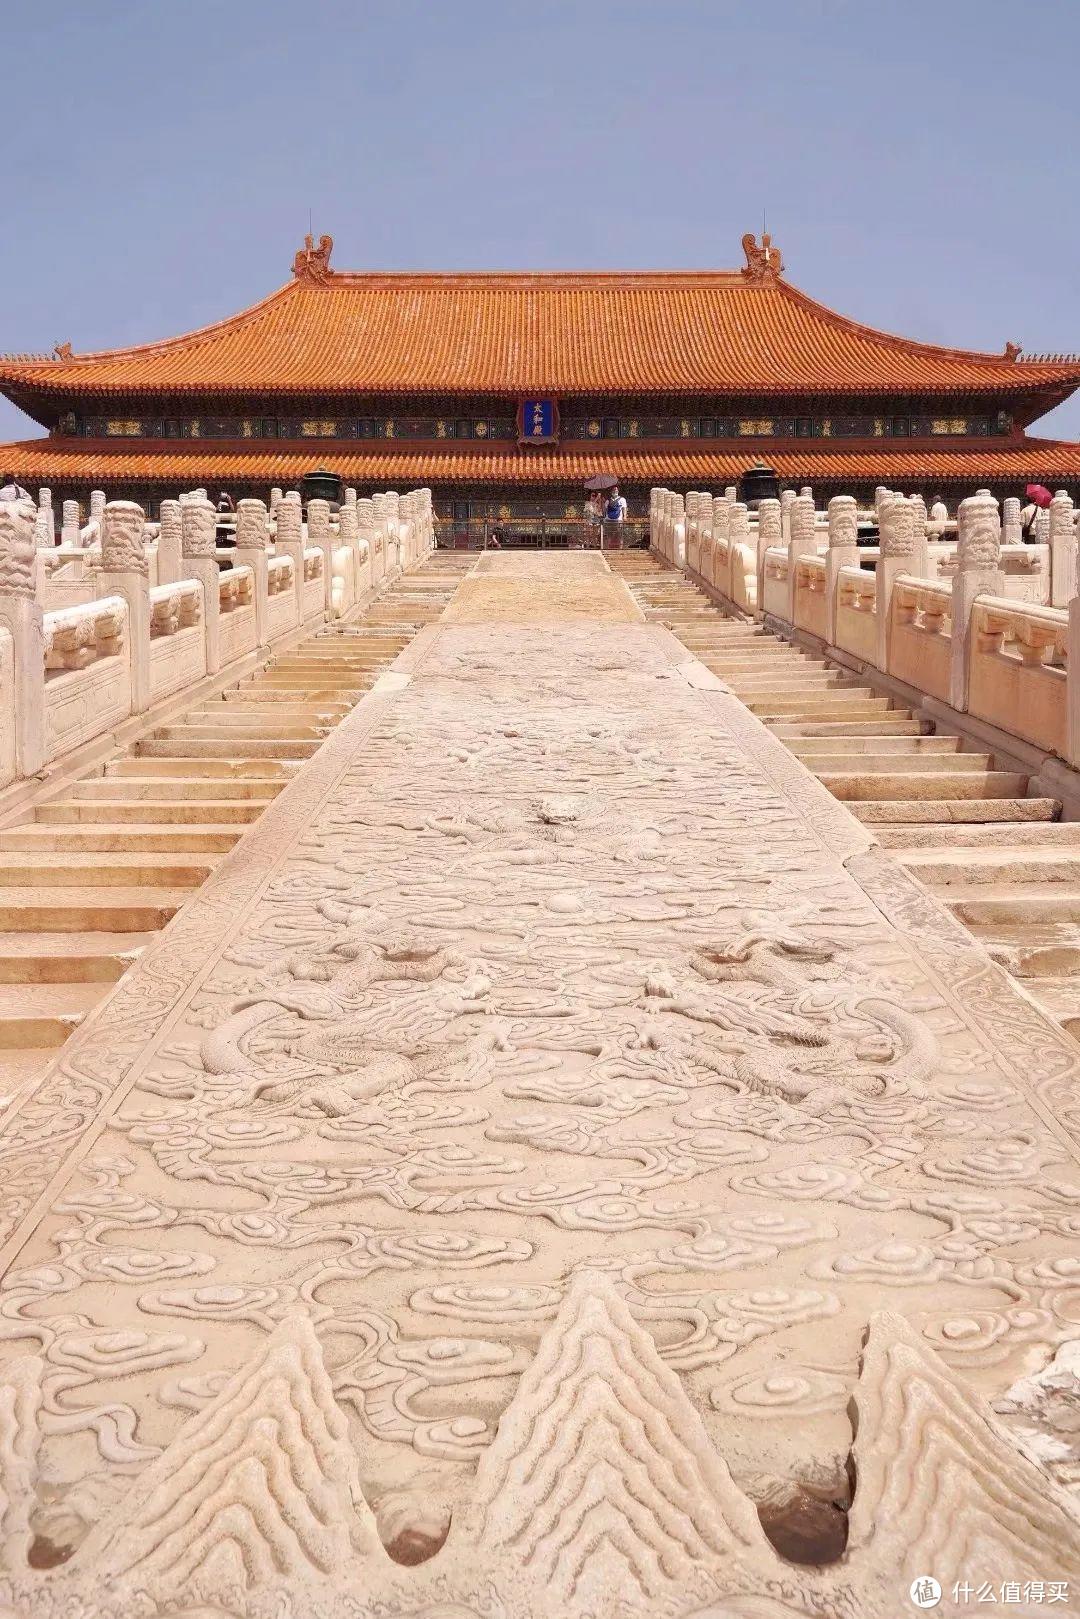 帝都北京那些不可错过的名胜古迹